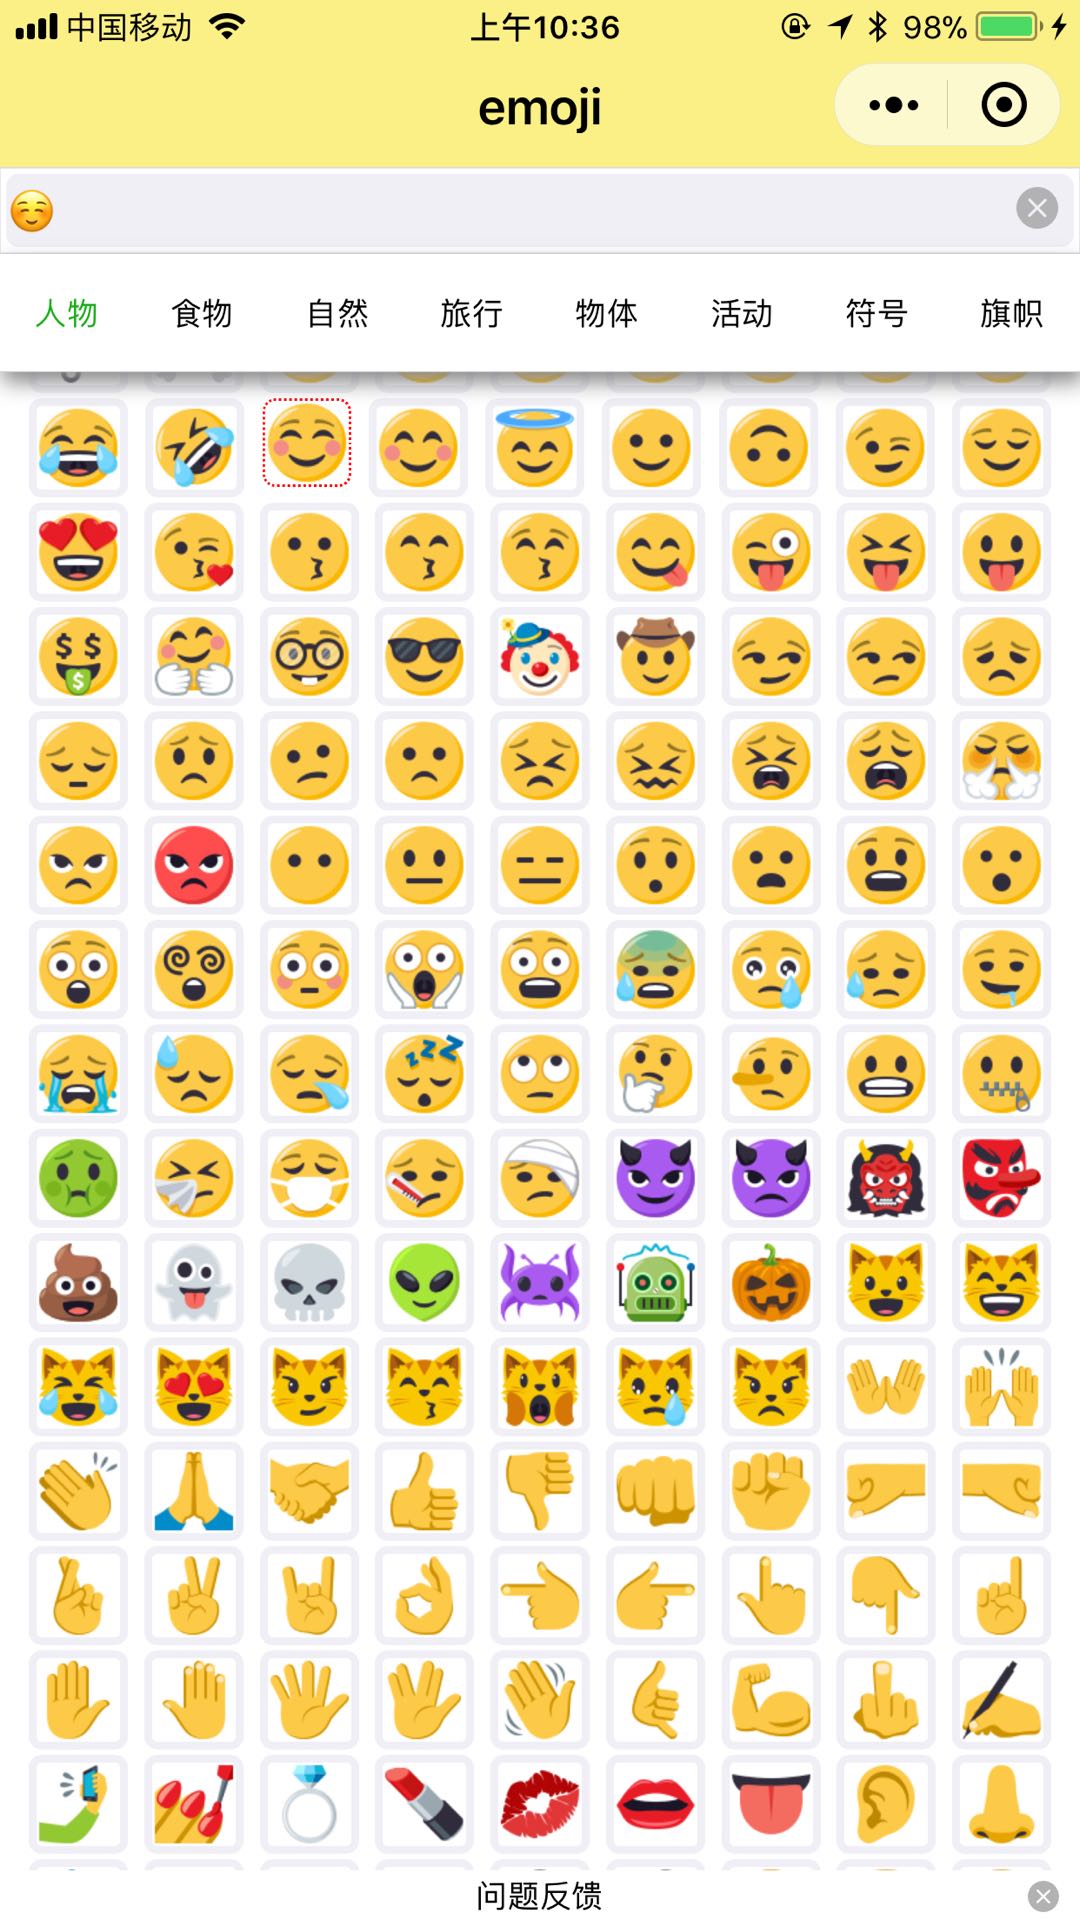 表情之emoji_表情之emoji小程序_表情之emoji微信小程序